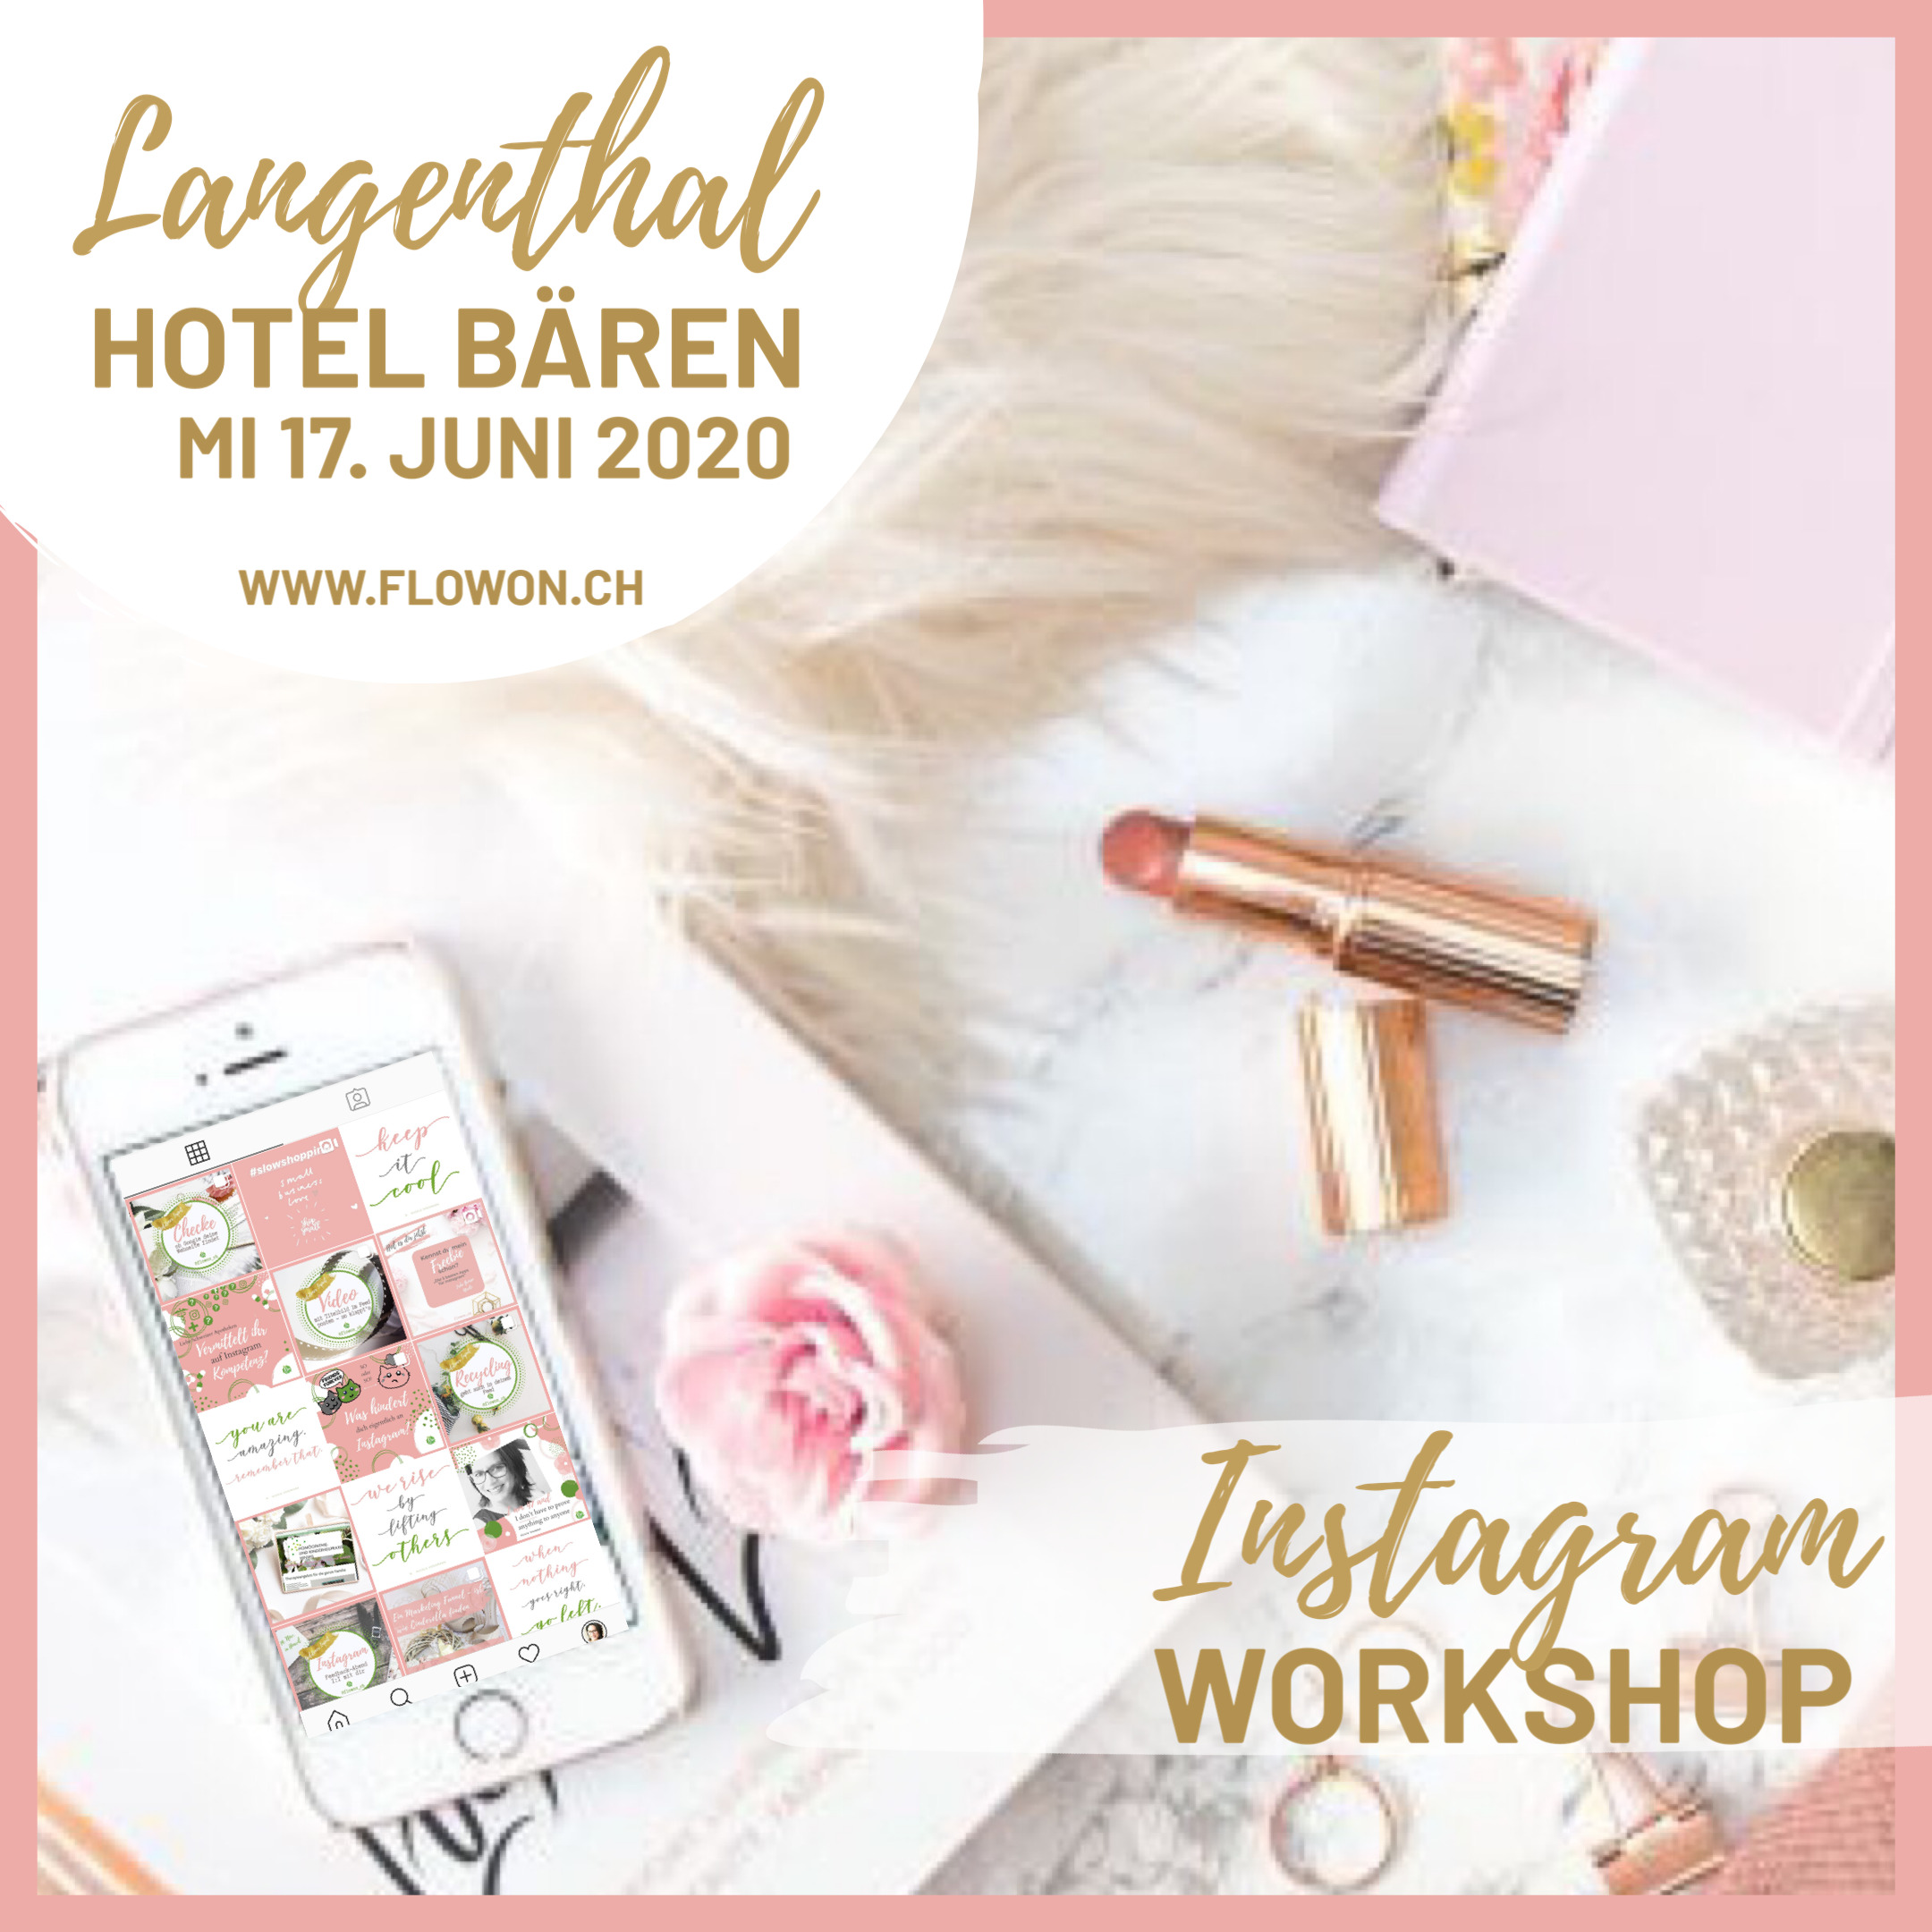 Instagram Workshop in Langenthal bei Bern. Lerne Instagram Business Anwenden und Strategie